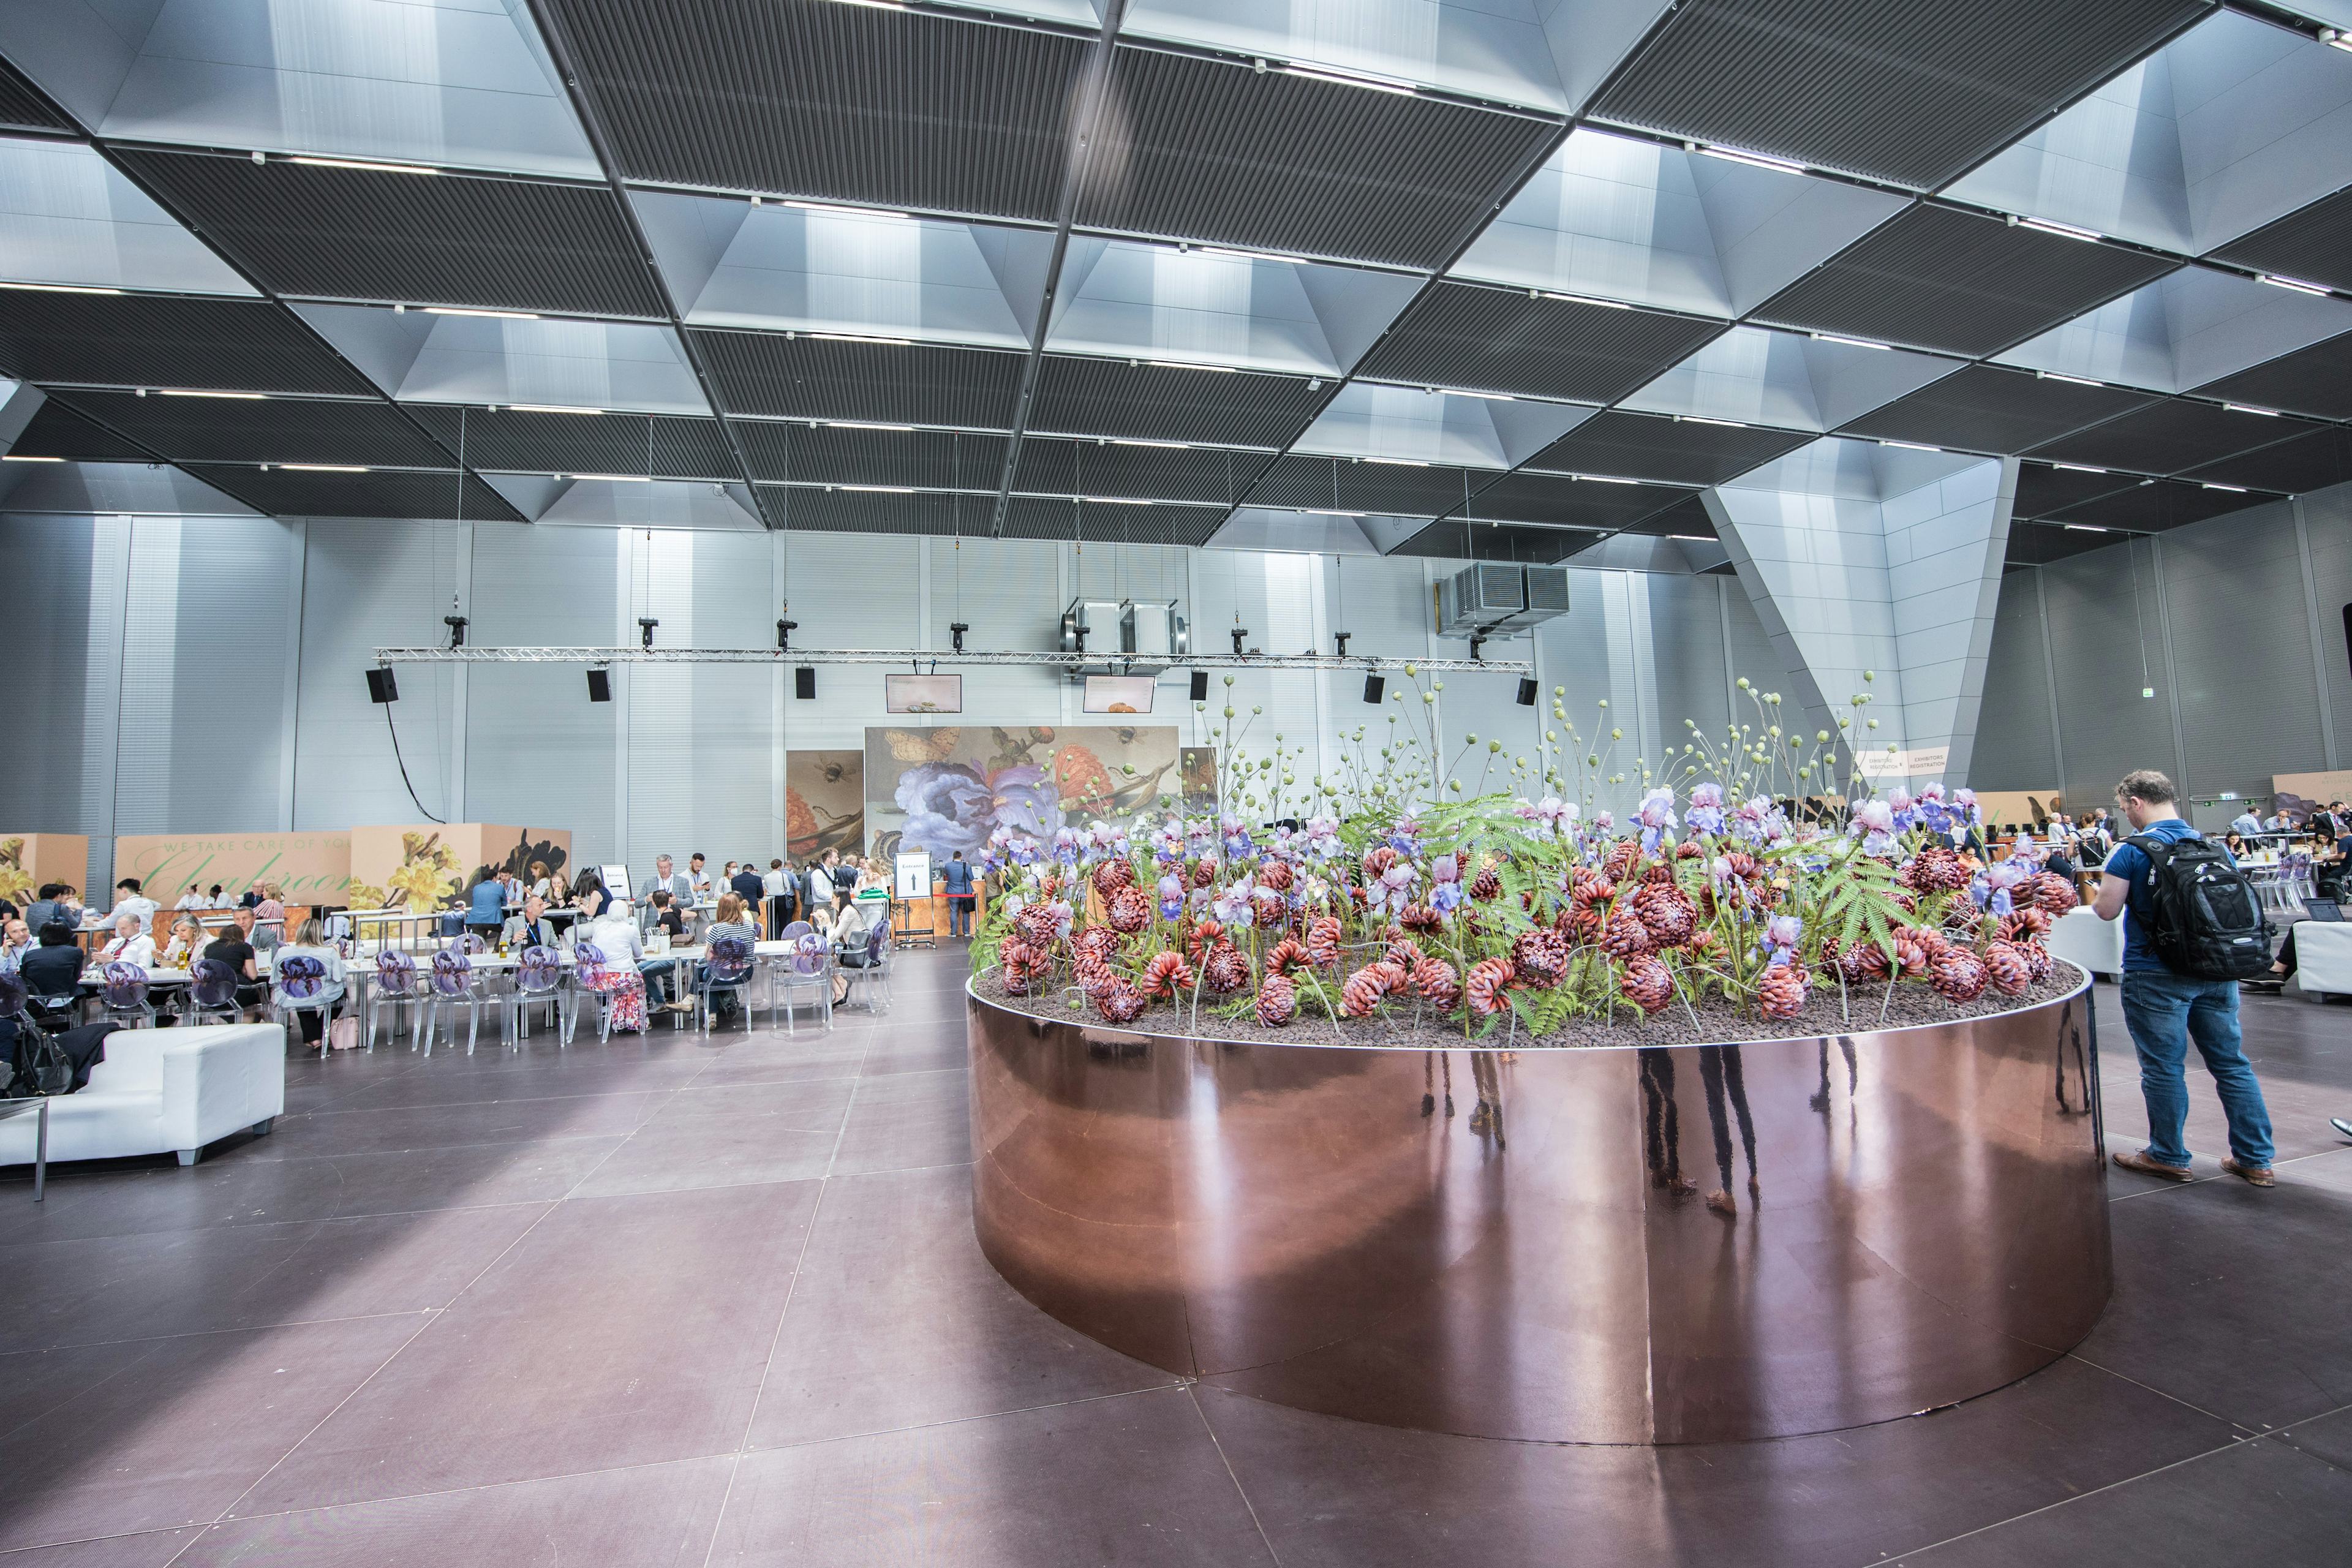 Foto: Großes Blumengesteck in einer Halle voller Menschen